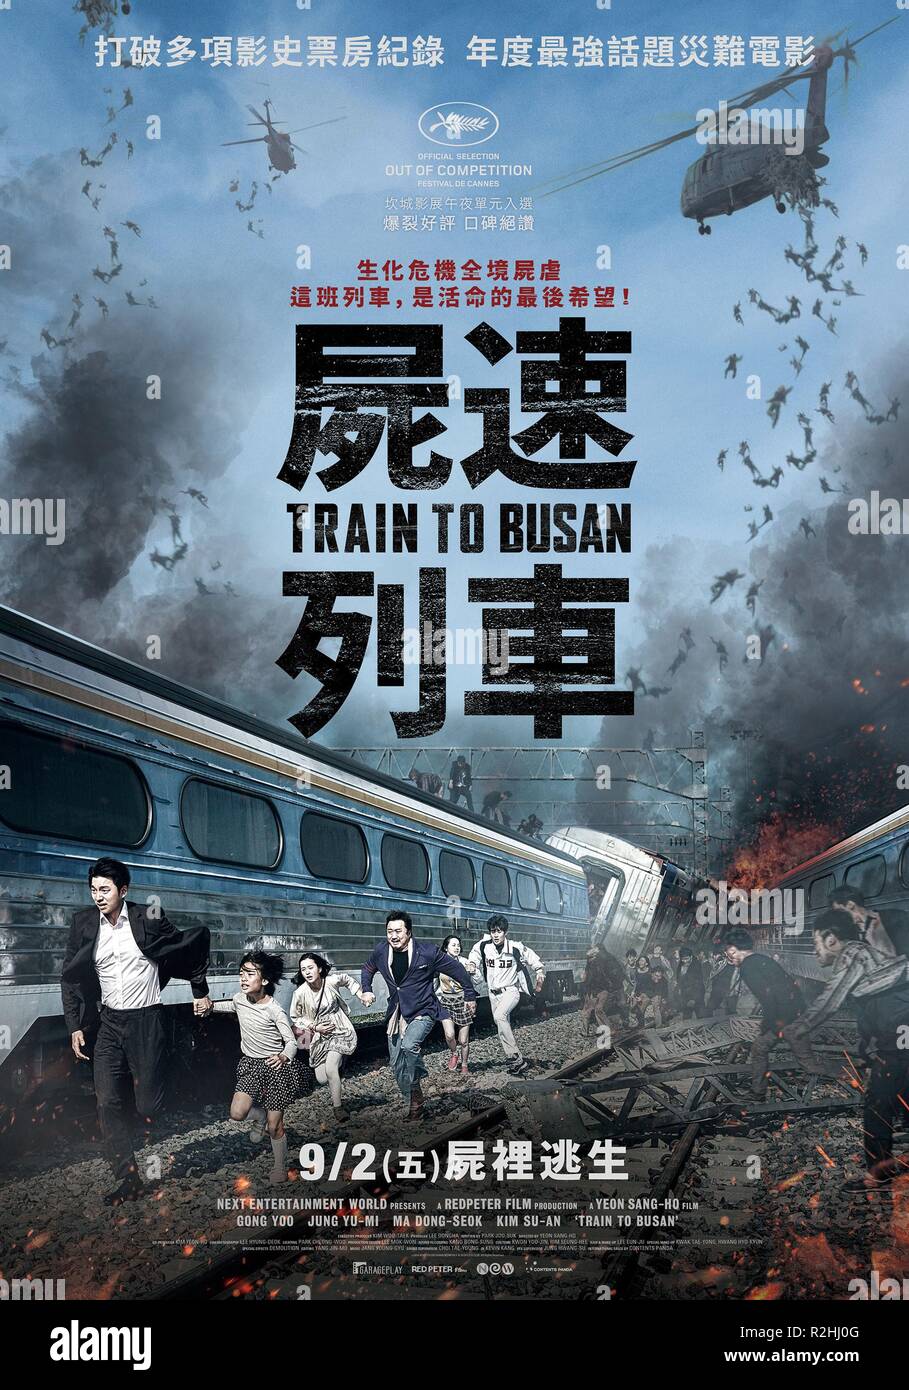 Train to busan